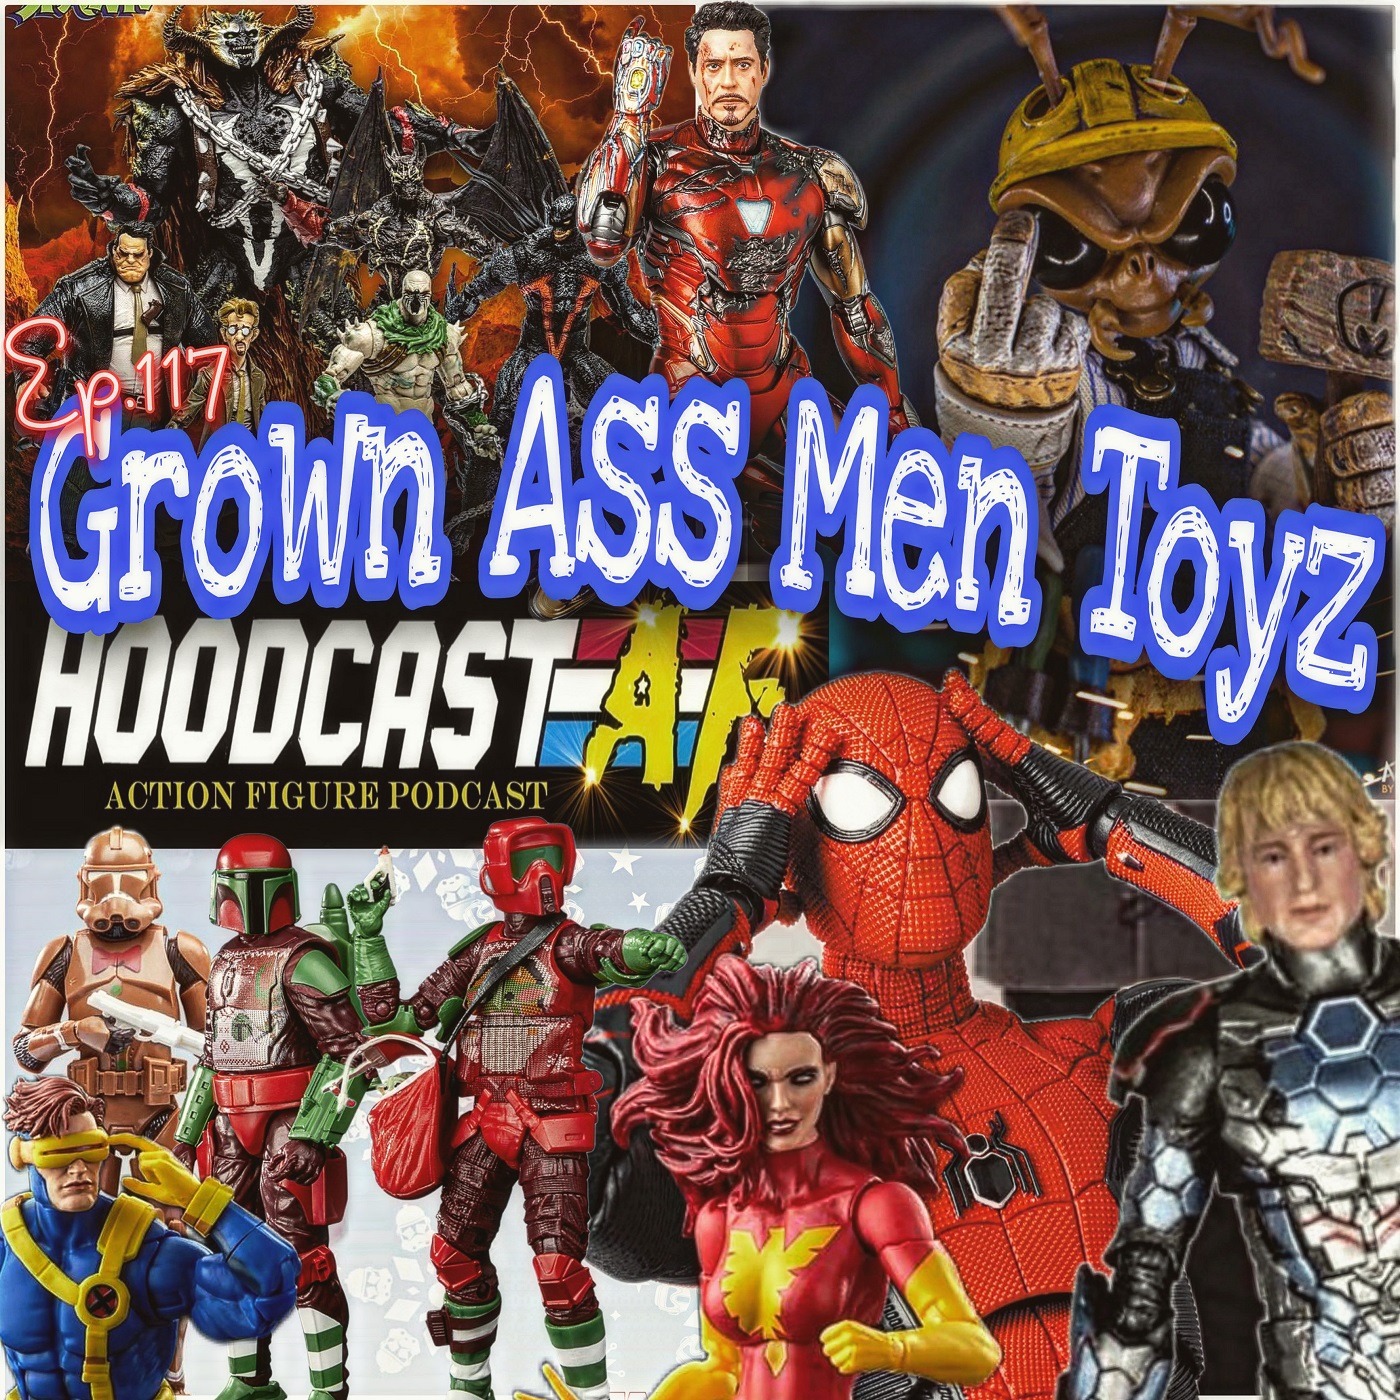 Grown Ass Men Toyz